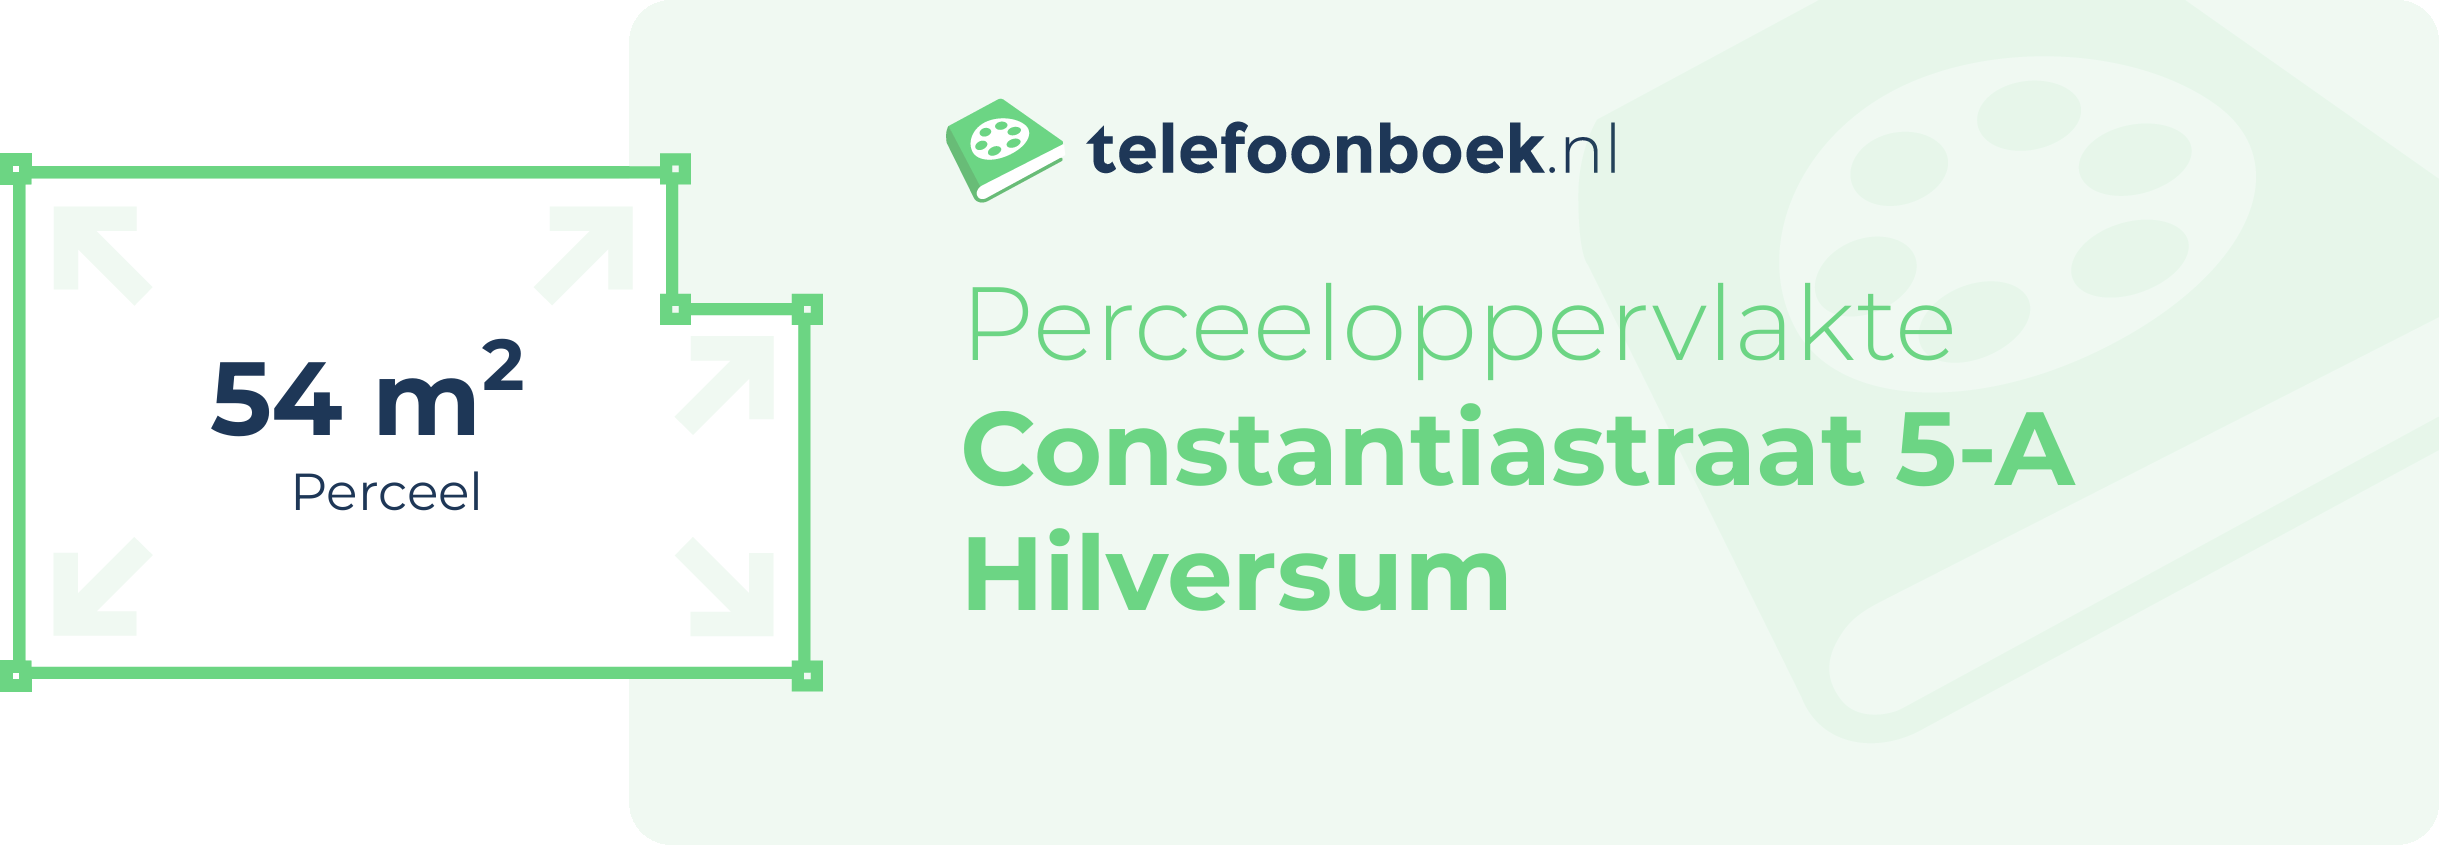 Perceeloppervlakte Constantiastraat 5-A Hilversum